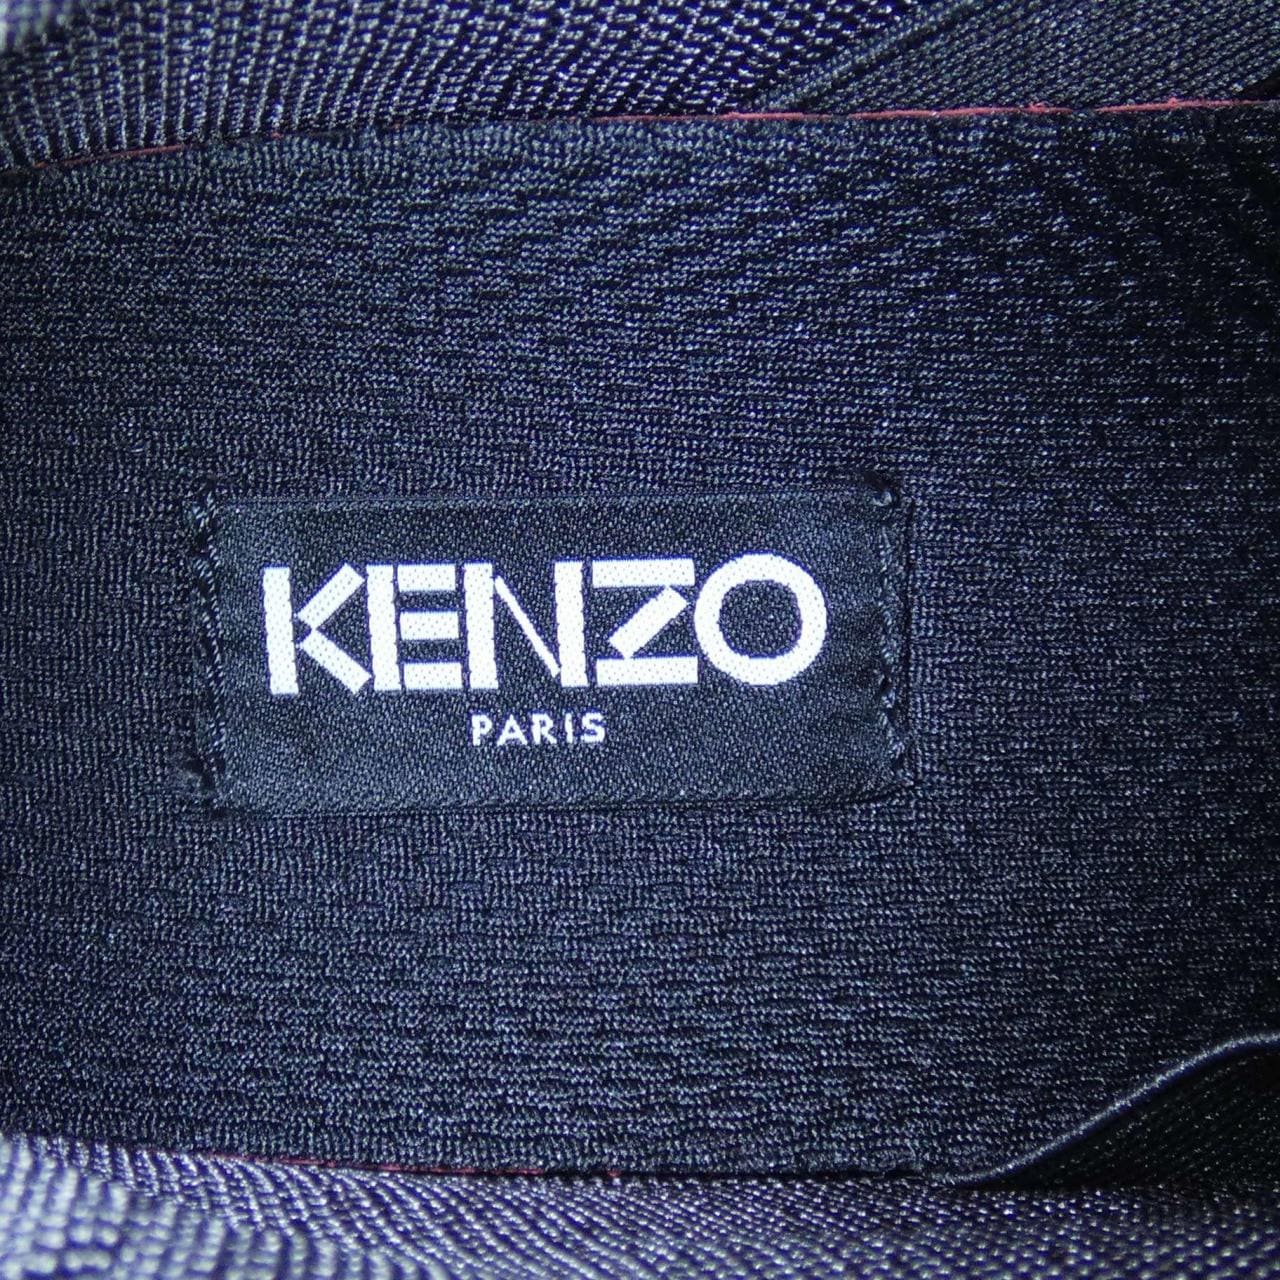 KENZO運動鞋